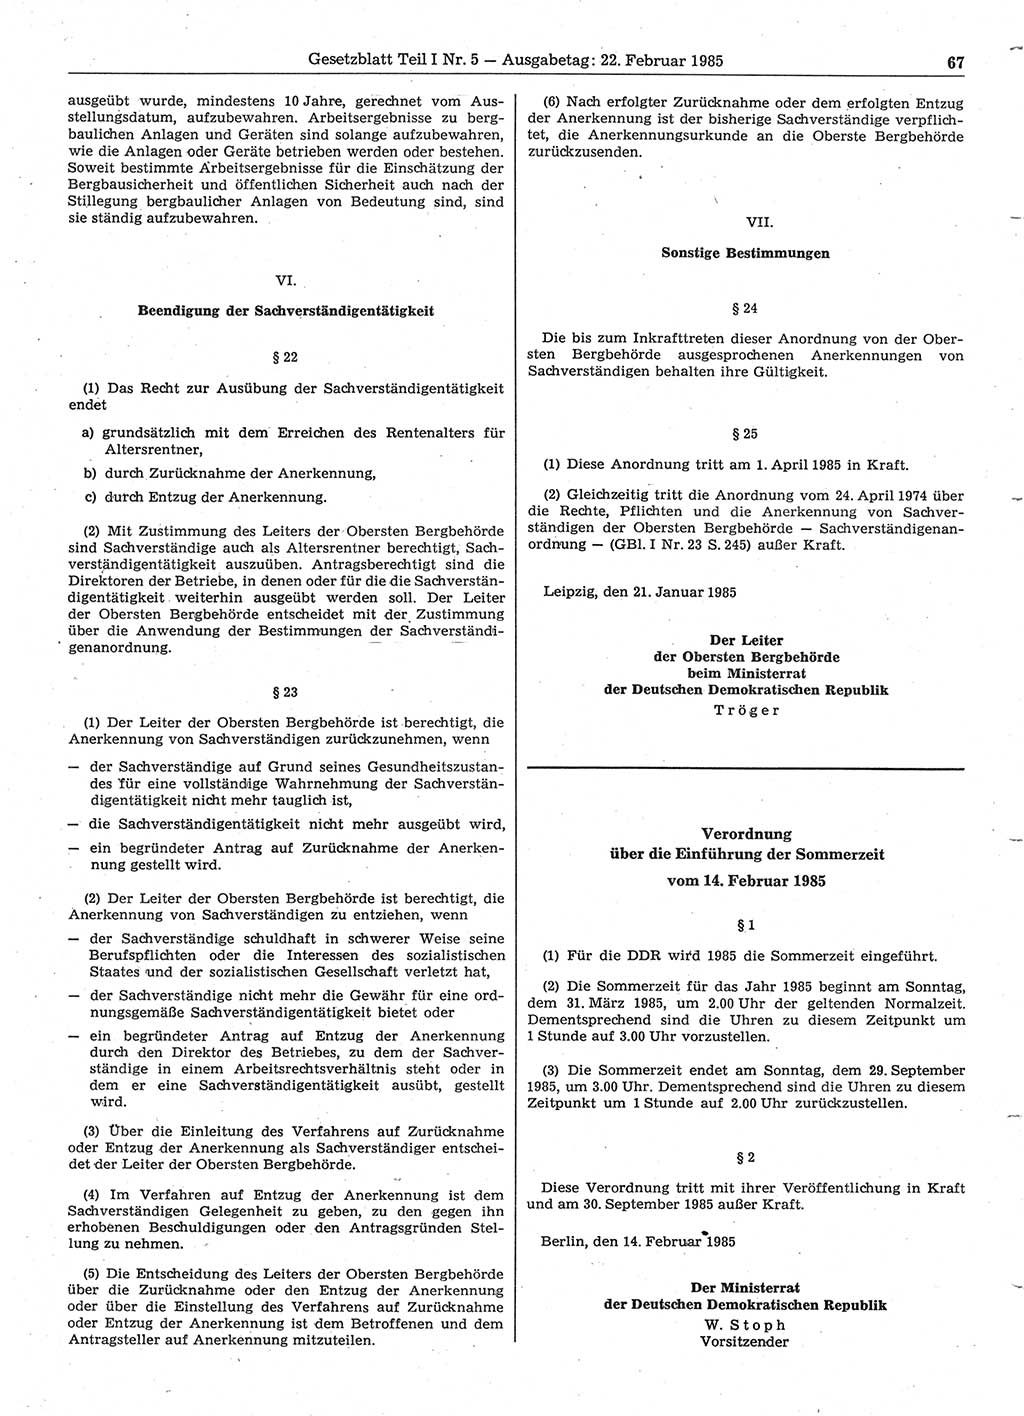 Gesetzblatt (GBl.) der Deutschen Demokratischen Republik (DDR) Teil Ⅰ 1985, Seite 67 (GBl. DDR Ⅰ 1985, S. 67)